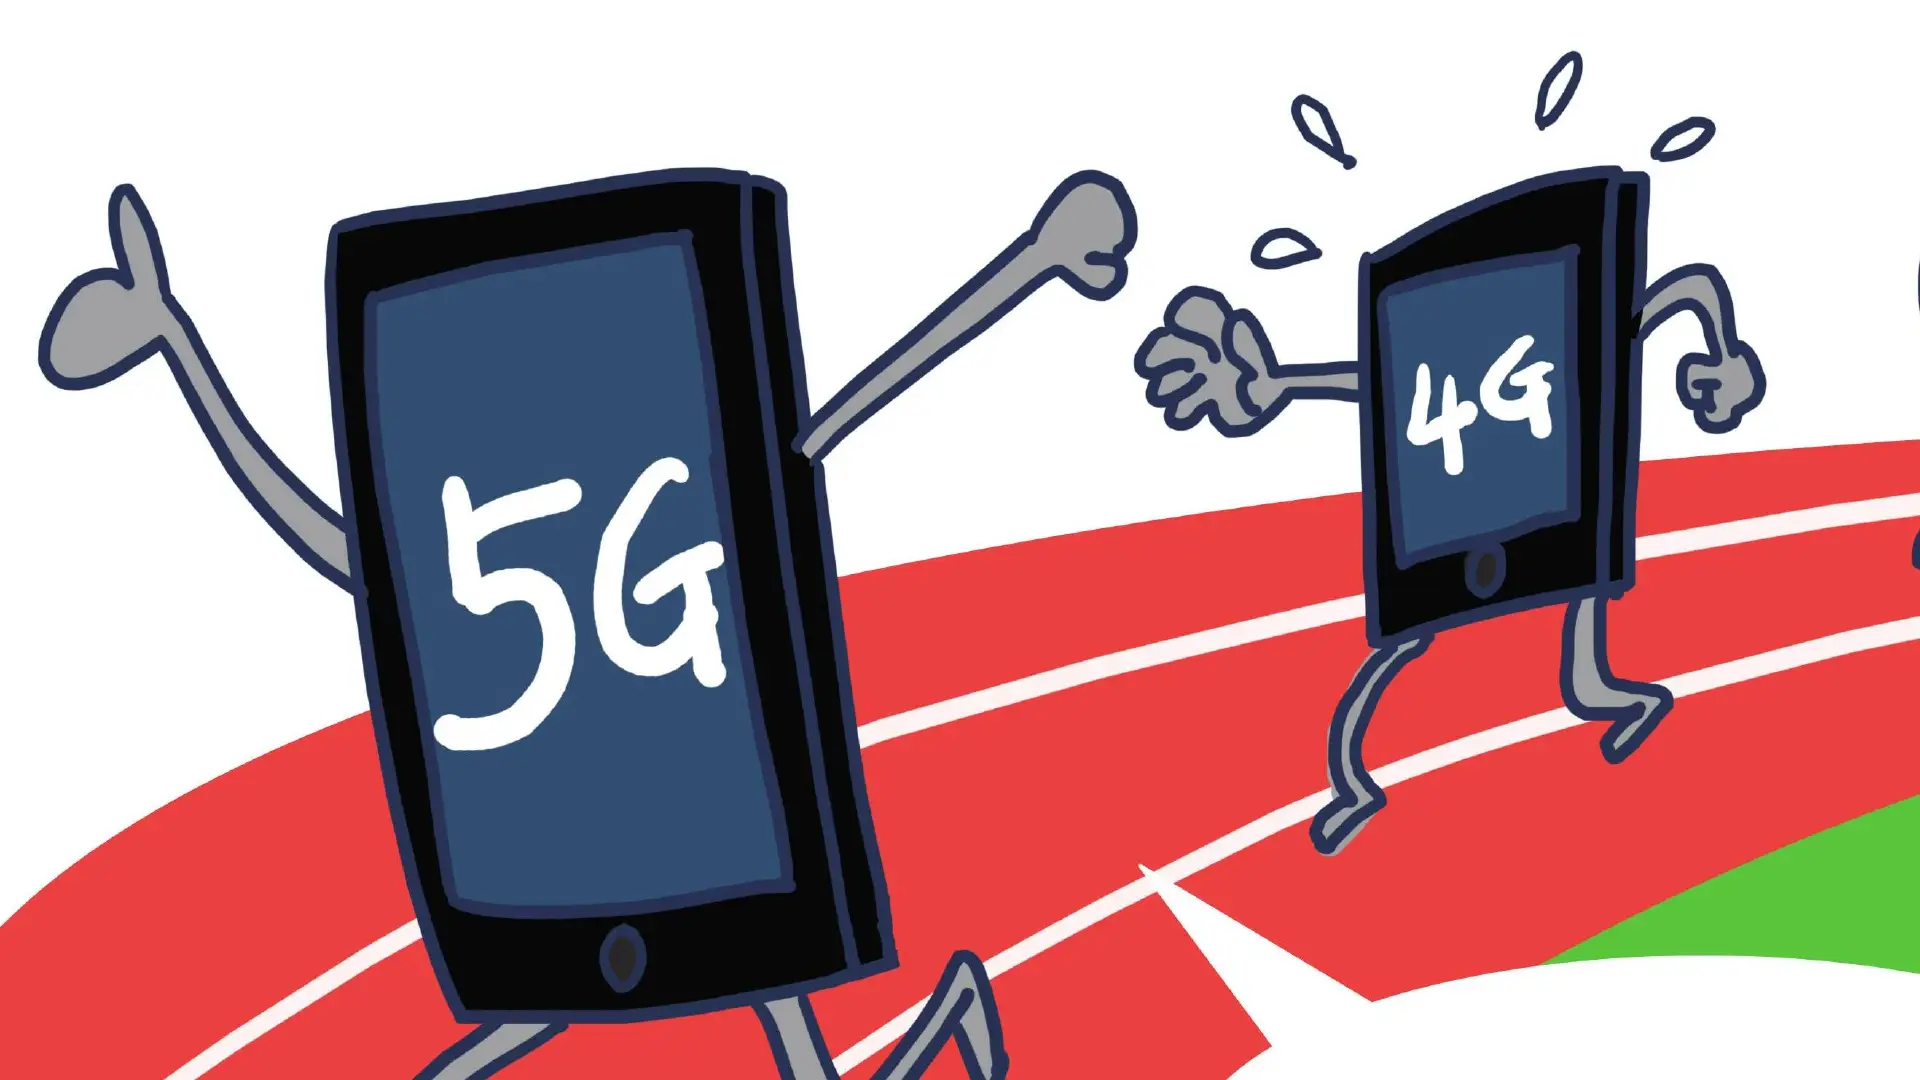 从蜗牛爬行到速度革命：3G 时代与 4G 时代的网速变革  第2张